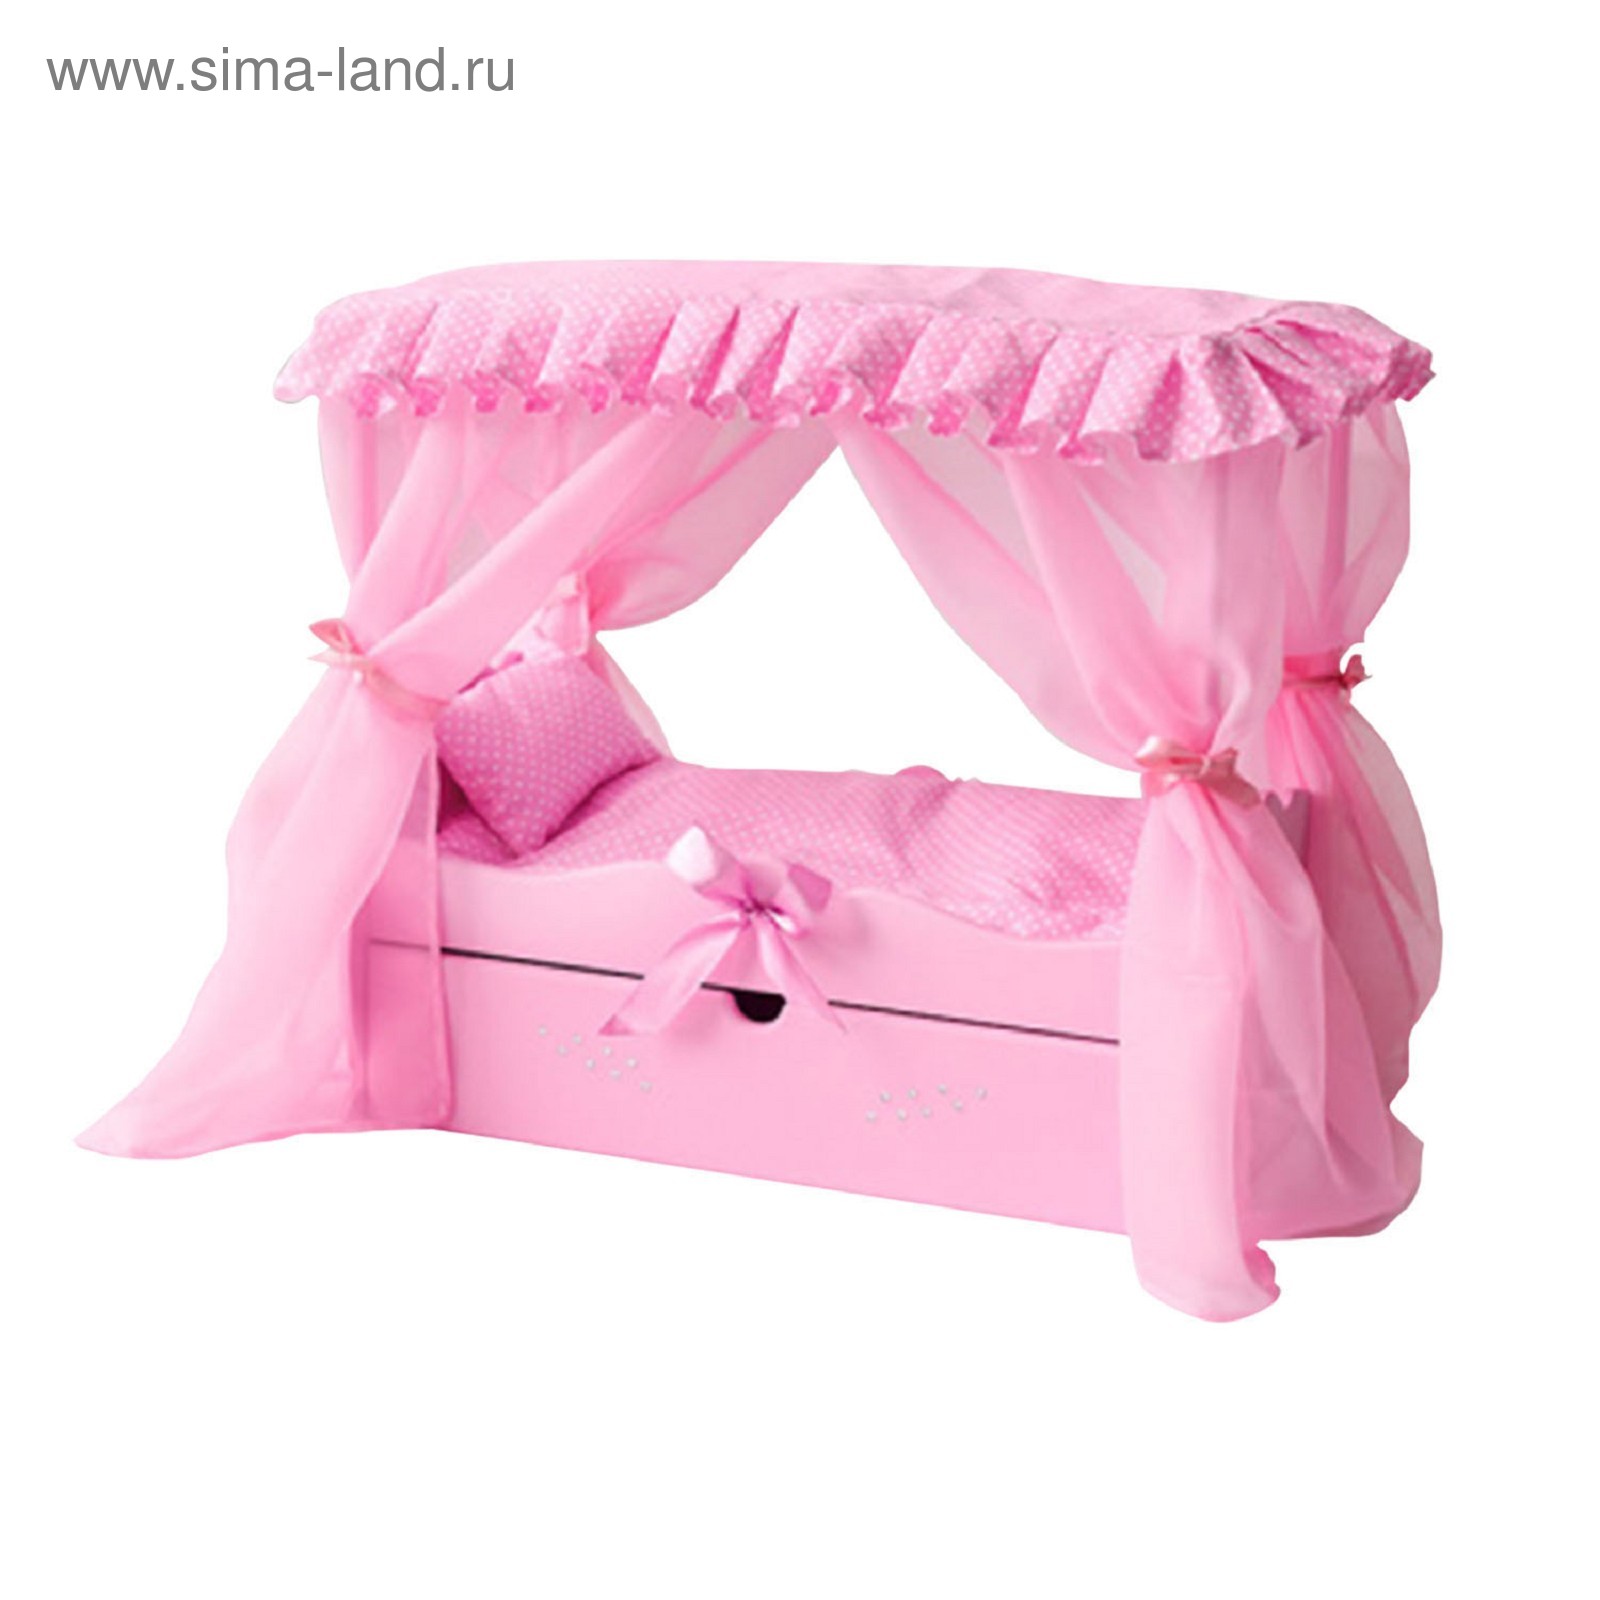 Кровать с балдахином и текстилем для Barbie